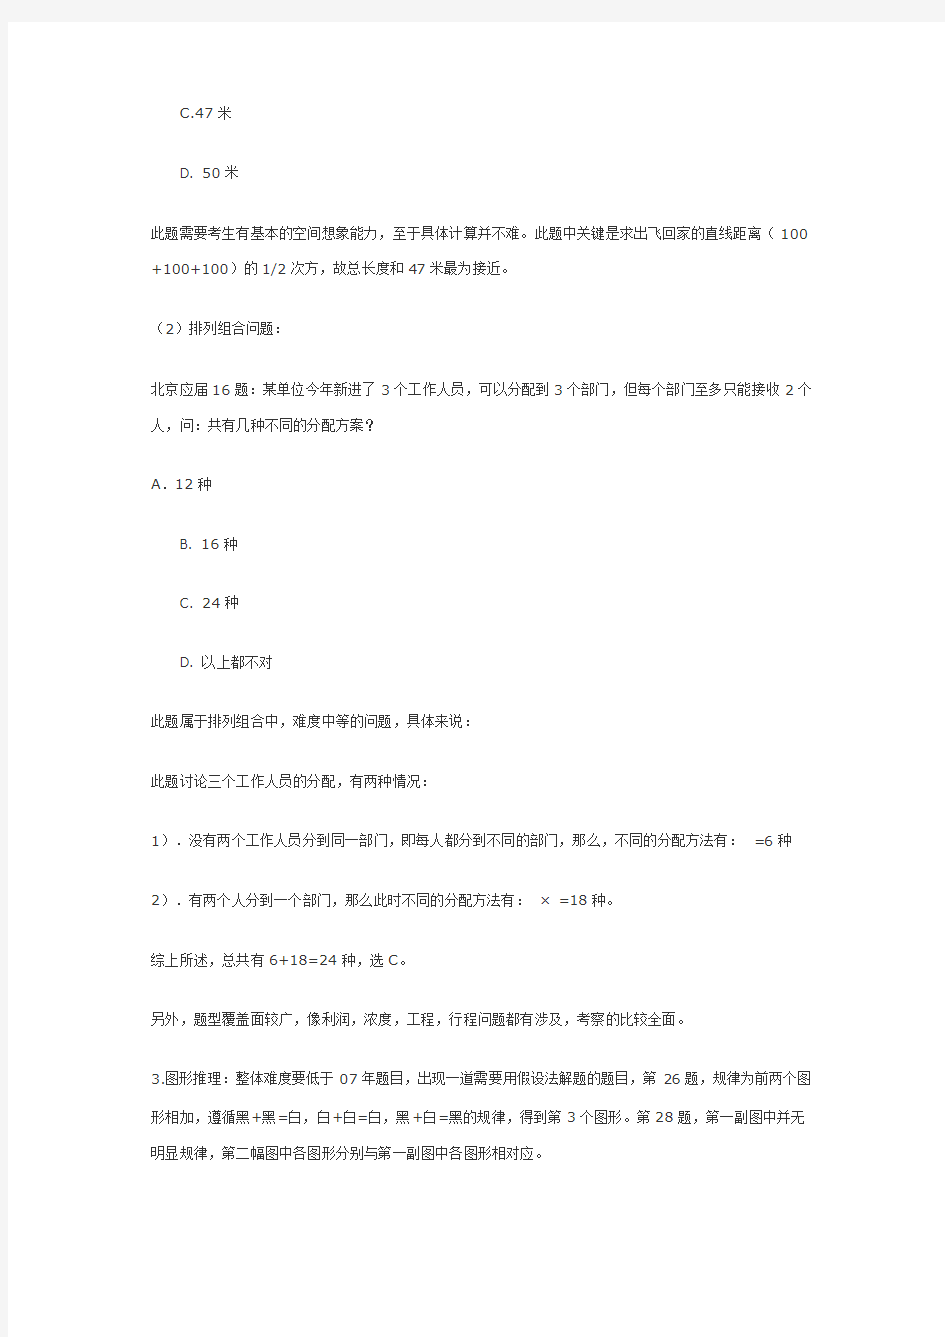 08年北京公务员考试行政职业能力测试真题试卷分析